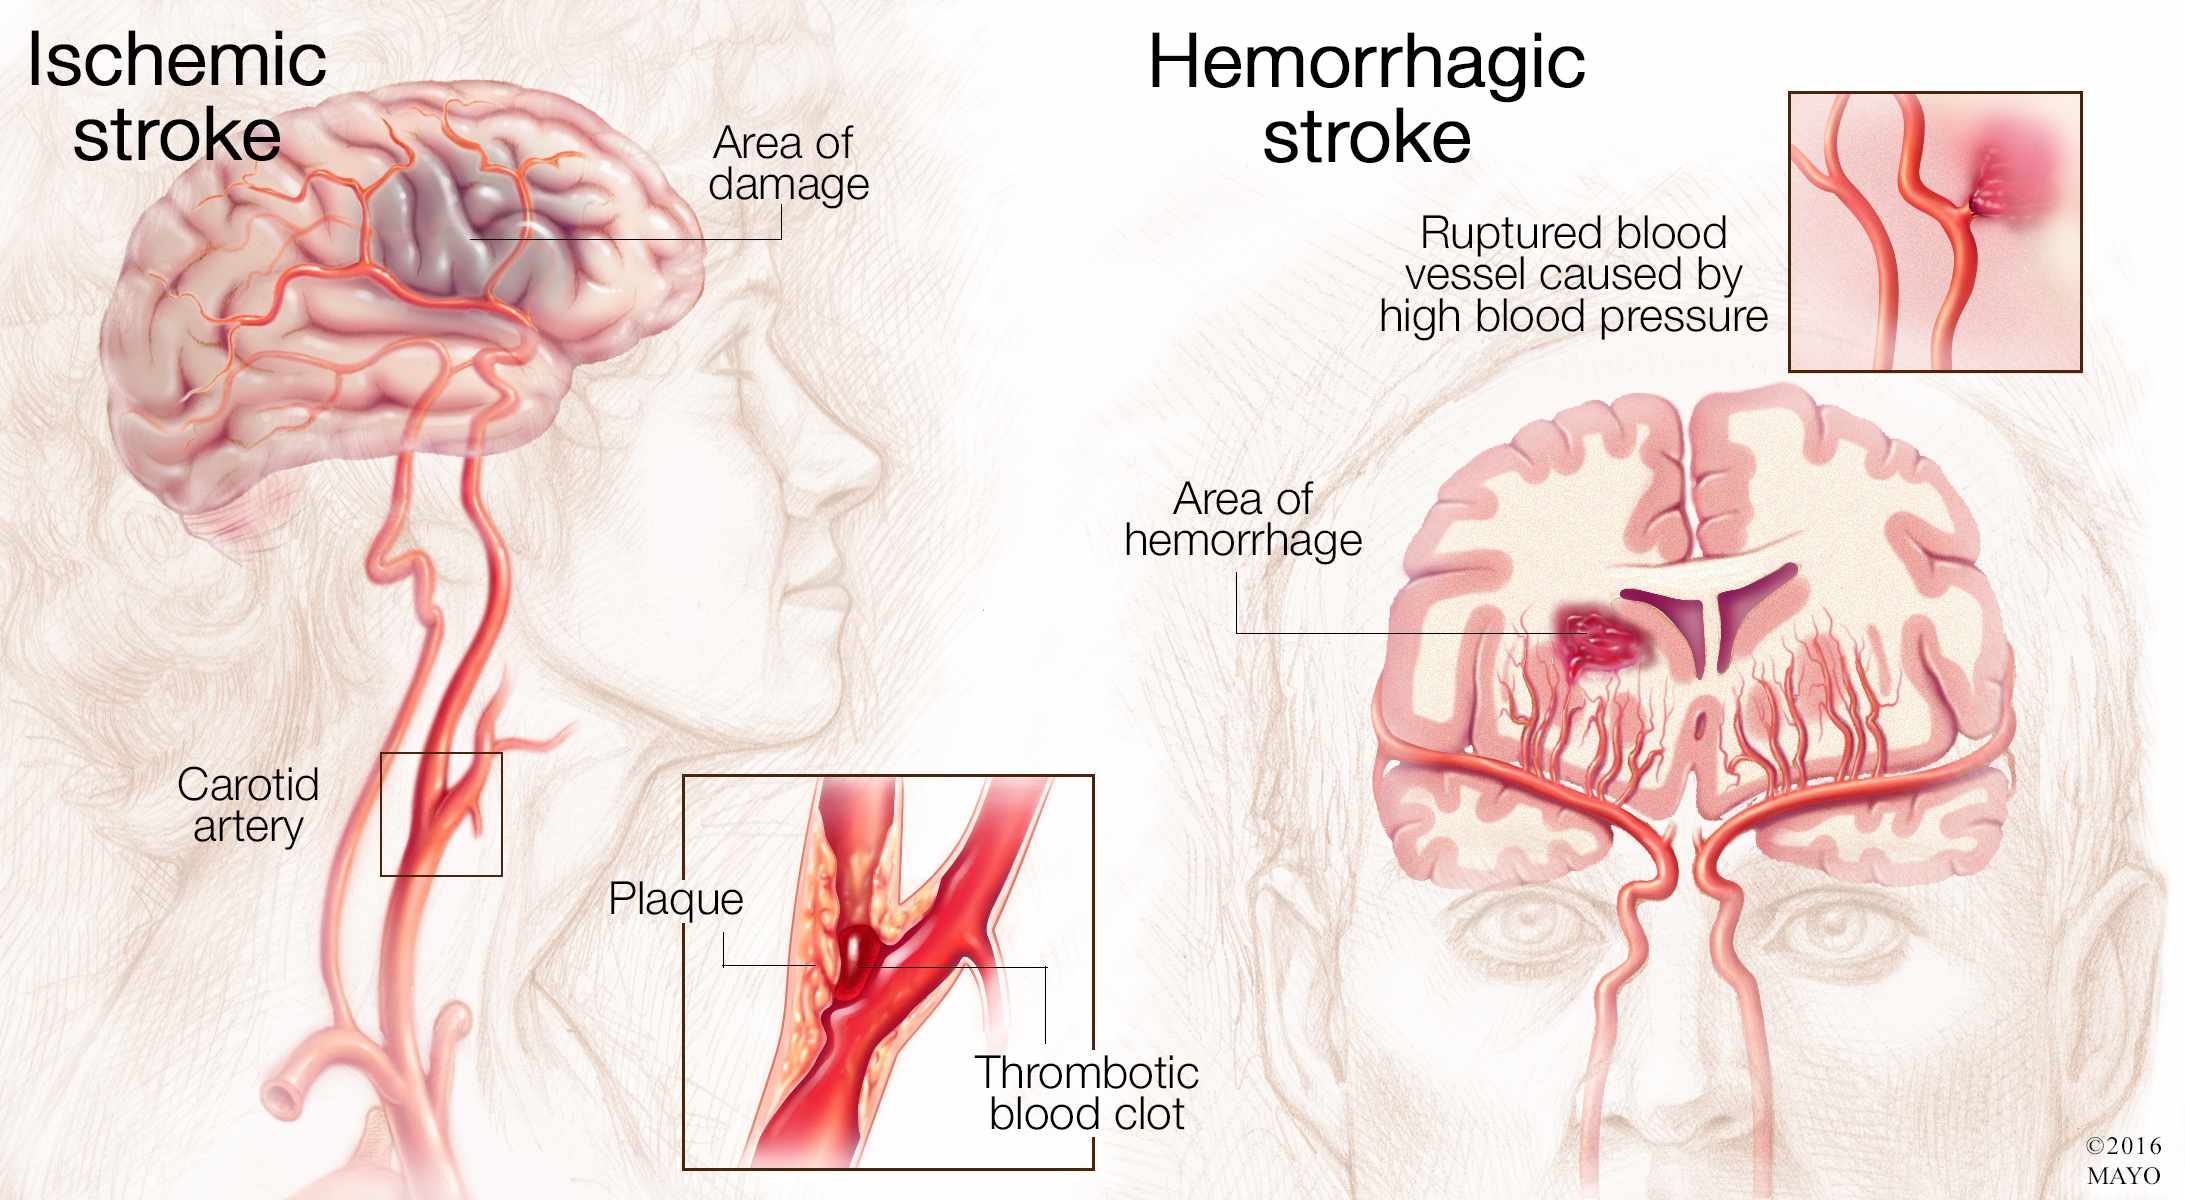 Ilustración médica de un cerebro con accidente cerebrovascular isquémico (izquierda) y accidente cerebrovascular hemorrágico (derecha)